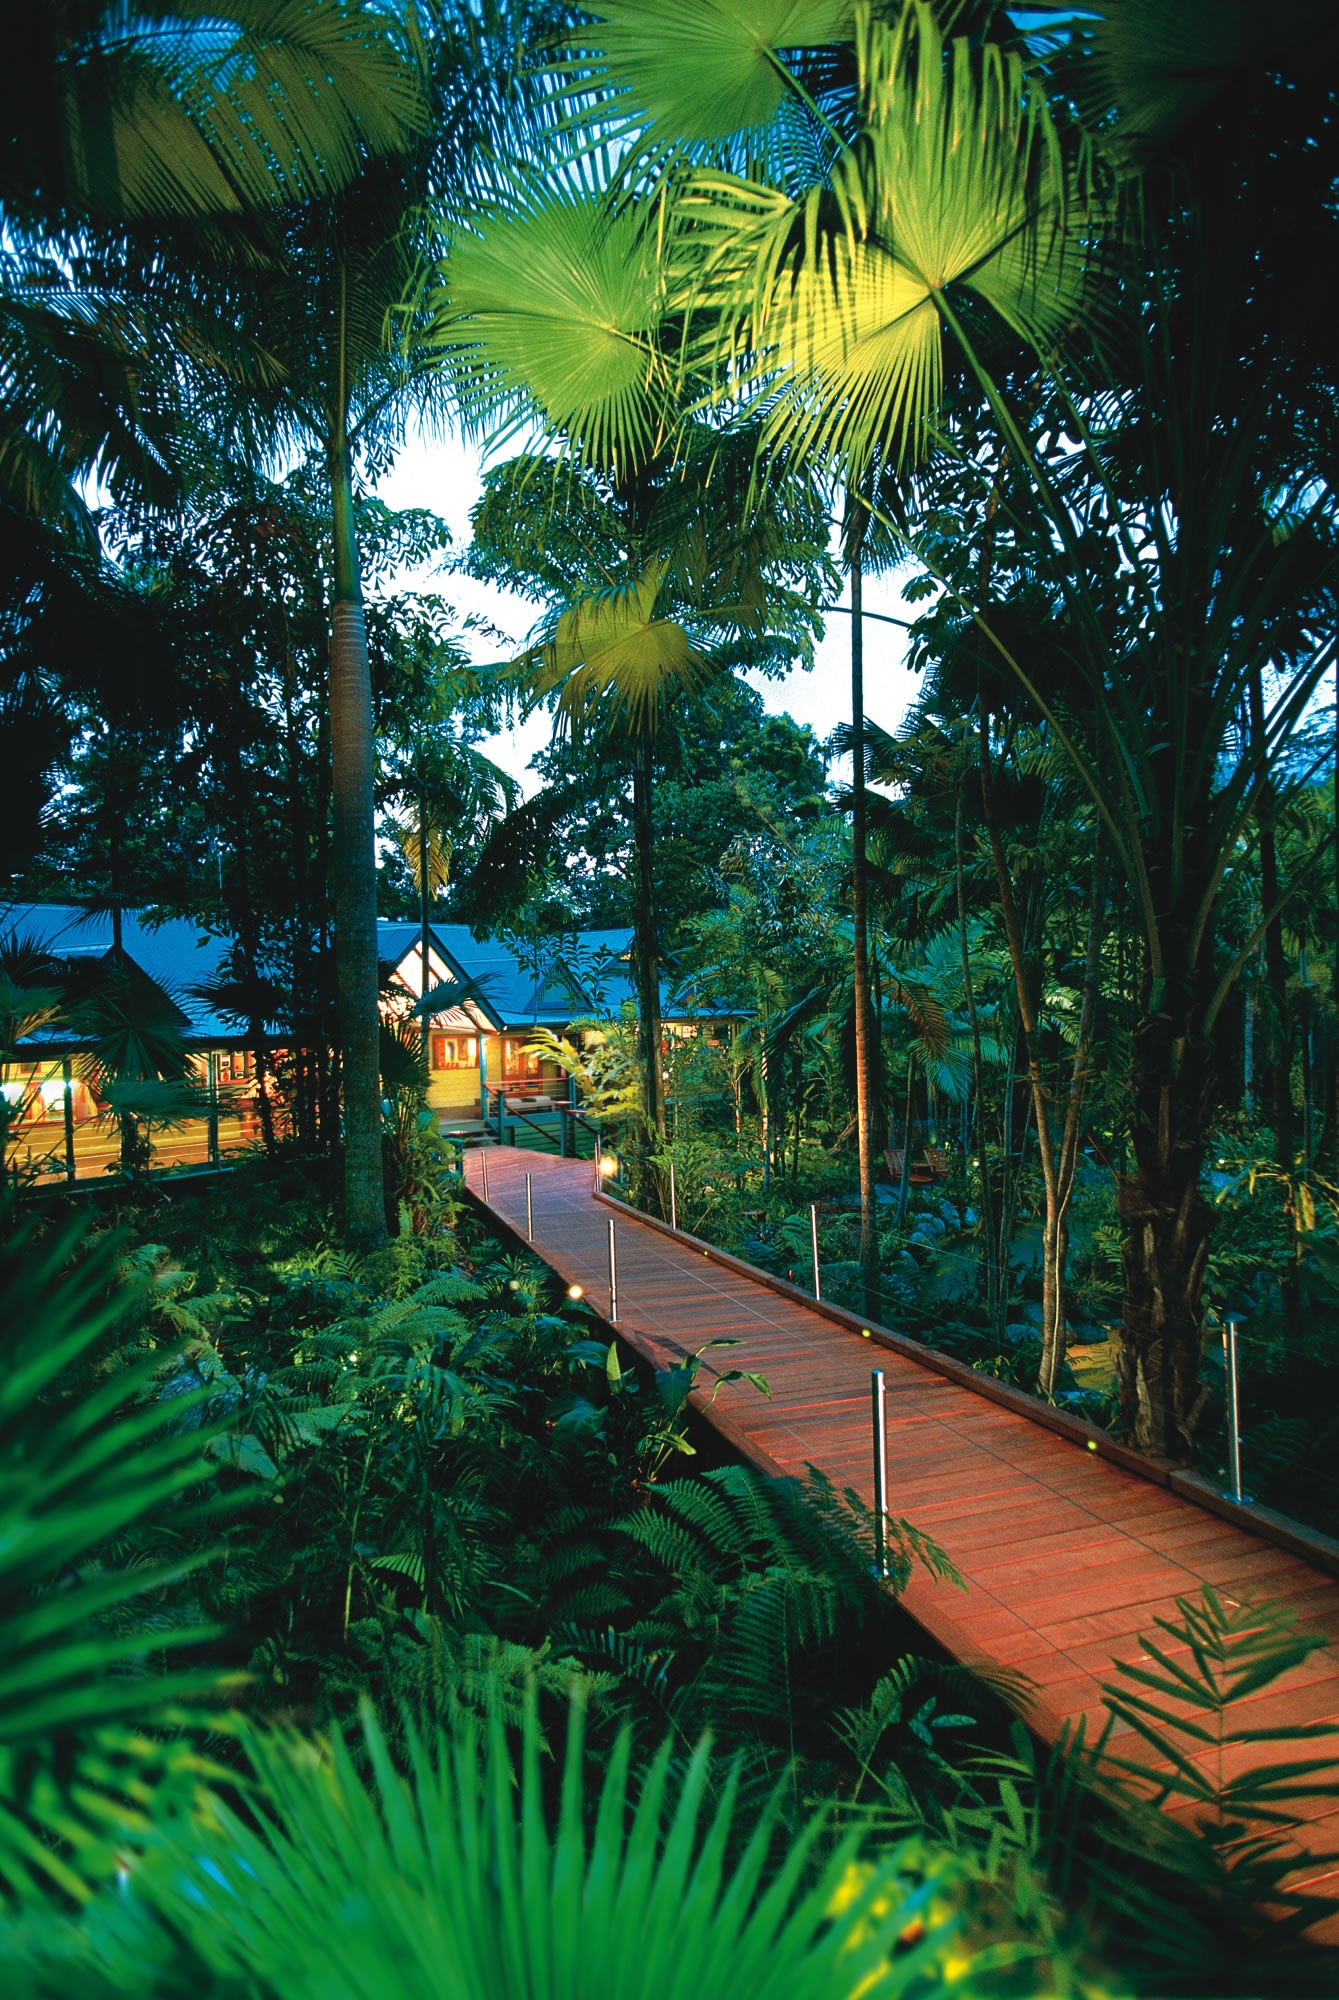 Silky Oaks Lodge: современный эко-курорт в Австралии